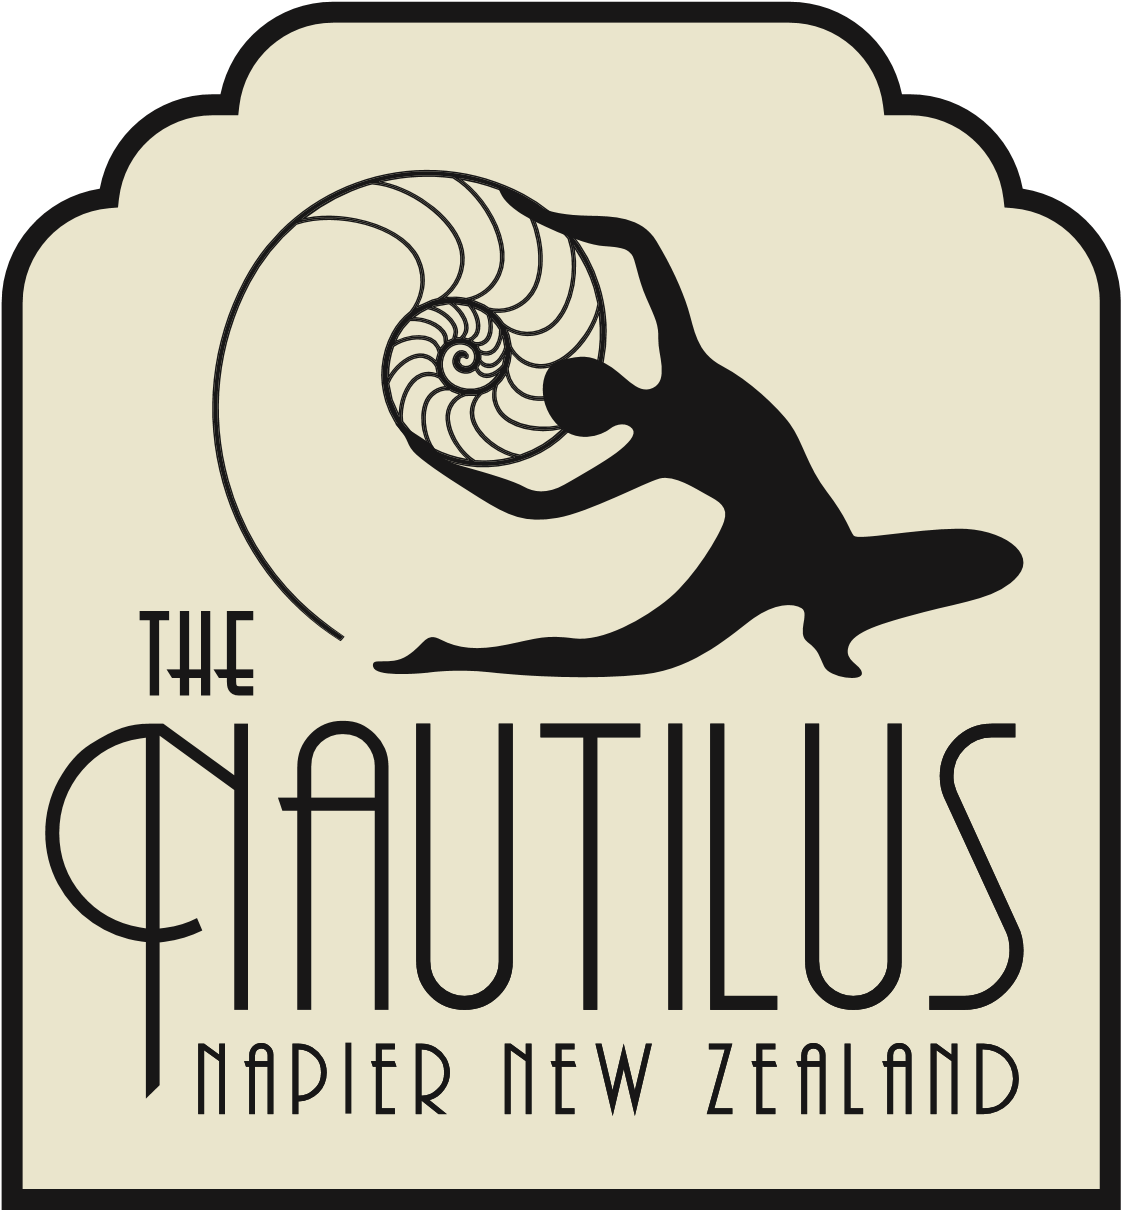 The Nautilus Napier